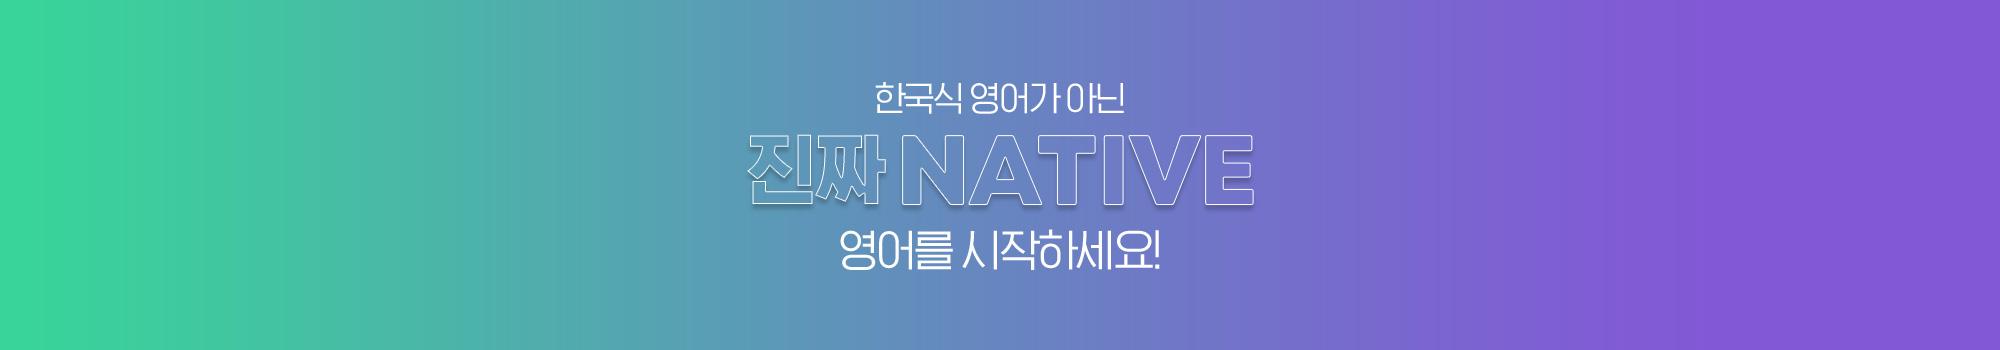 한국식 영어가 아닌 진짜 NATIVE 영어를 시작하세요!